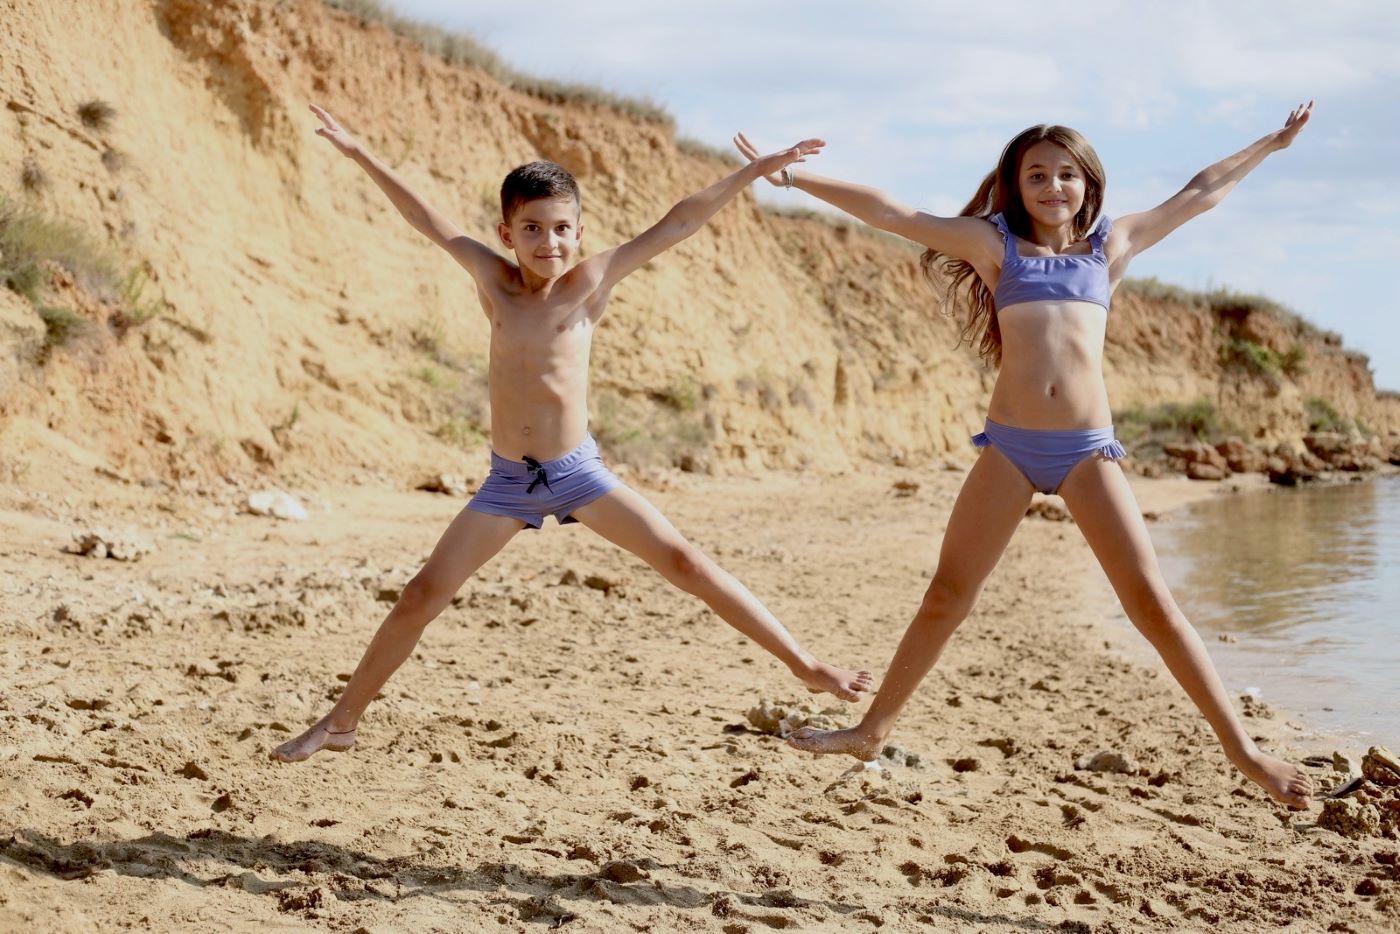 Nova Lunilou kolekcija eco – friendly kupaćih kostima za djecu i odrasle